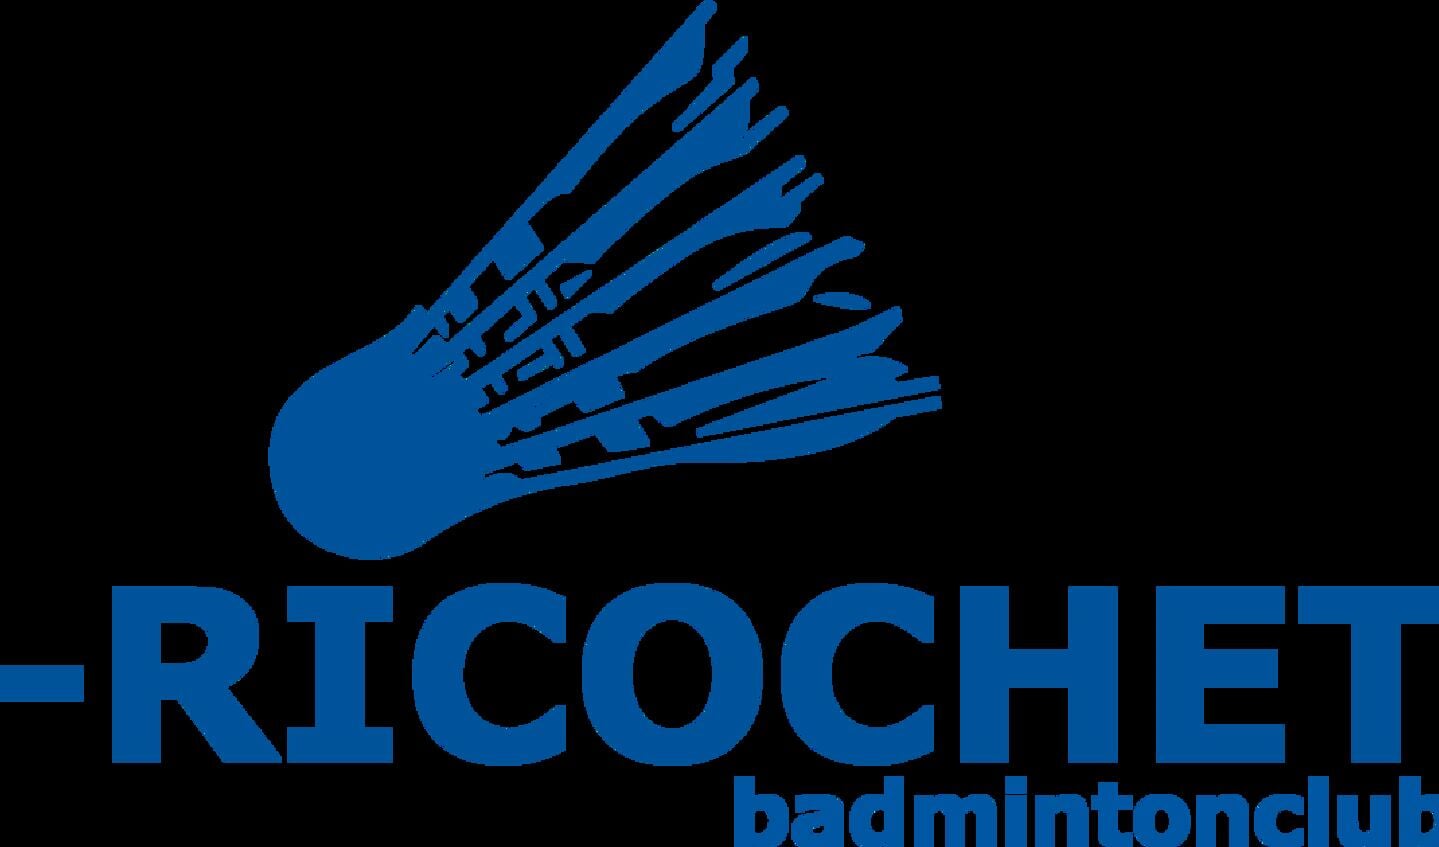 BadmintonClub Ricochet bestaat 50 jaar!